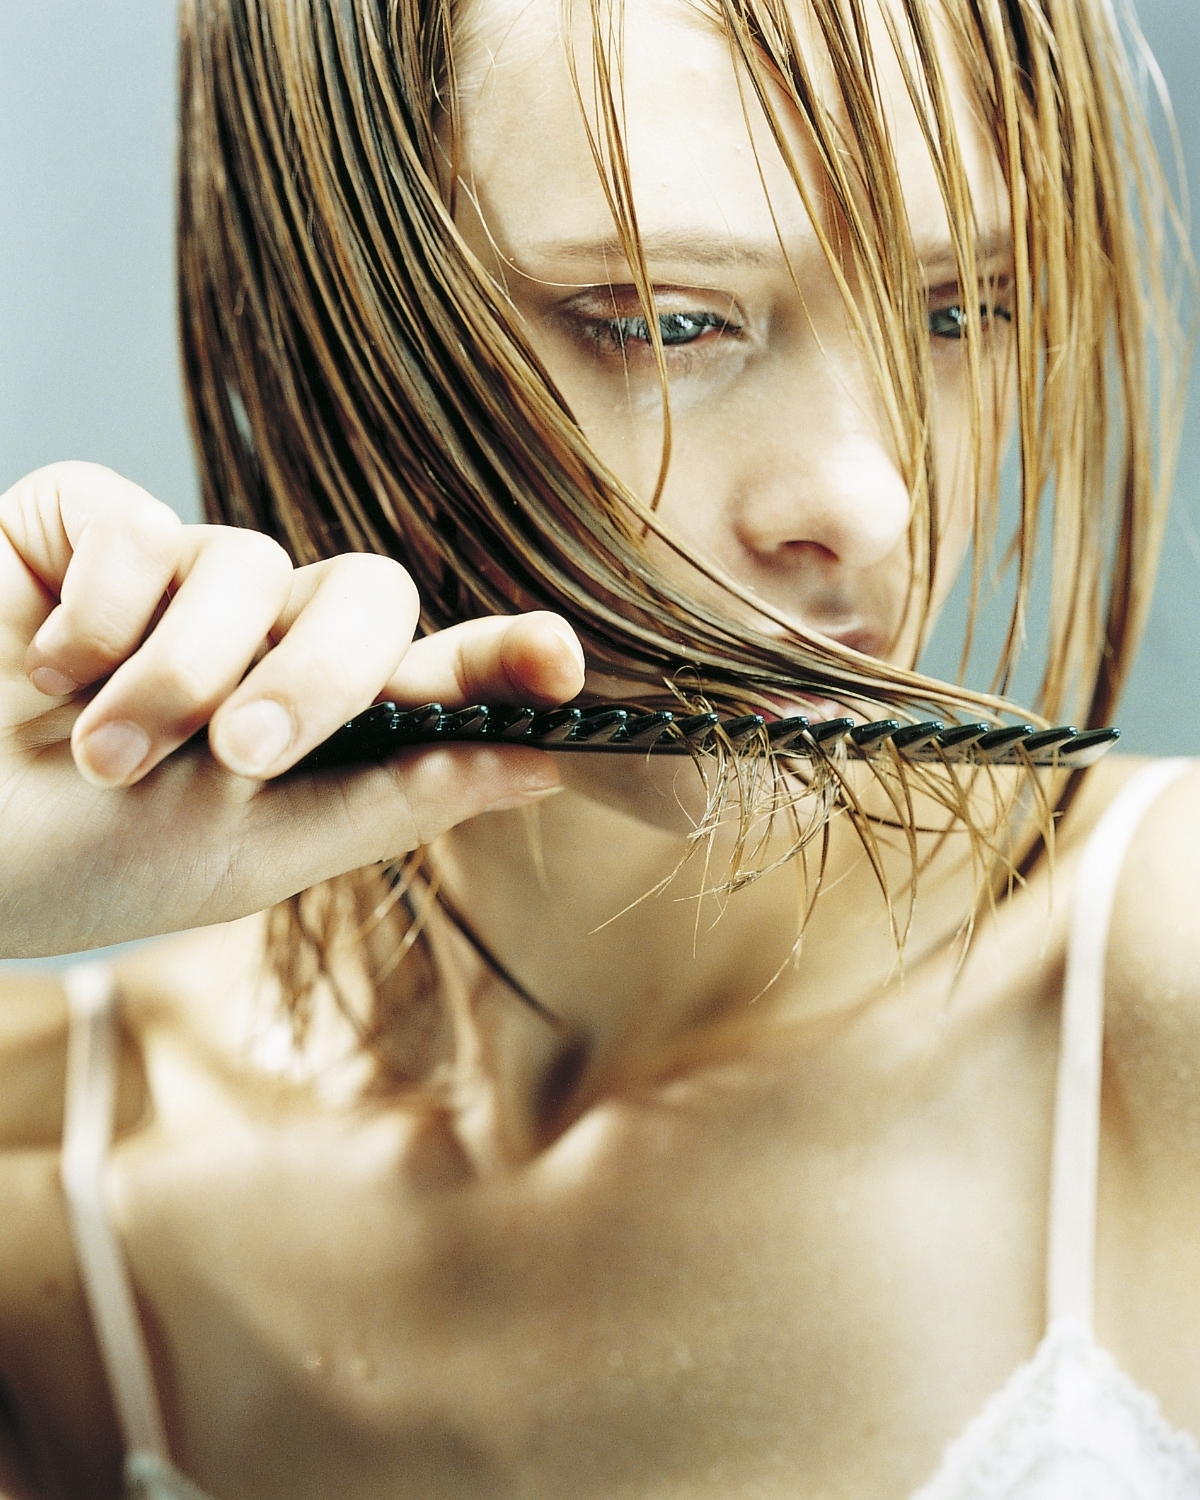 En mojado, el pelo se parte con más facilidad si está enredado. Por eso, es mejor desenredarlo y peinarlo en seco antes de lavarlo.